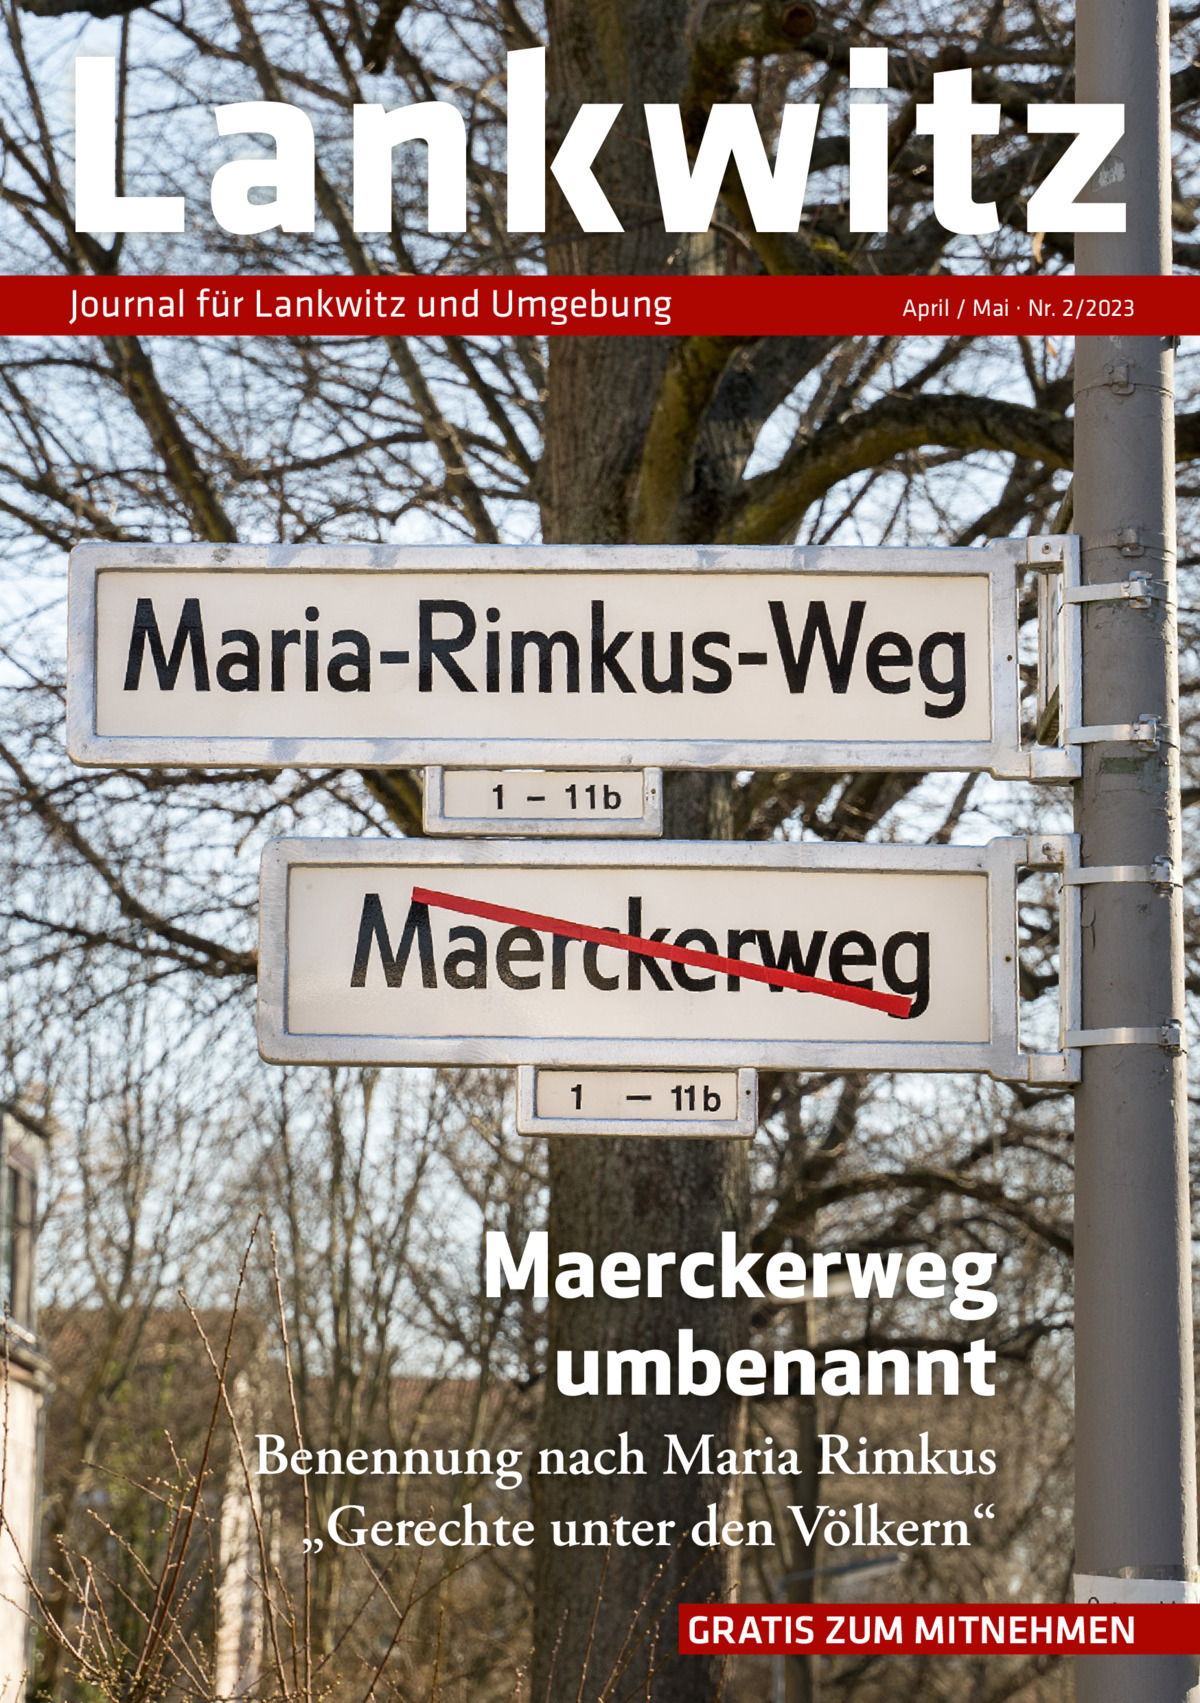 Lankwitz Journal für Lankwitz und Umgebung  April / Mai · Nr. 2/2023  Maerckerweg umbenannt Benennung nach Maria Rimkus „Gerechte unter den Völkern“ GRATIS ZUM MITNEHMEN